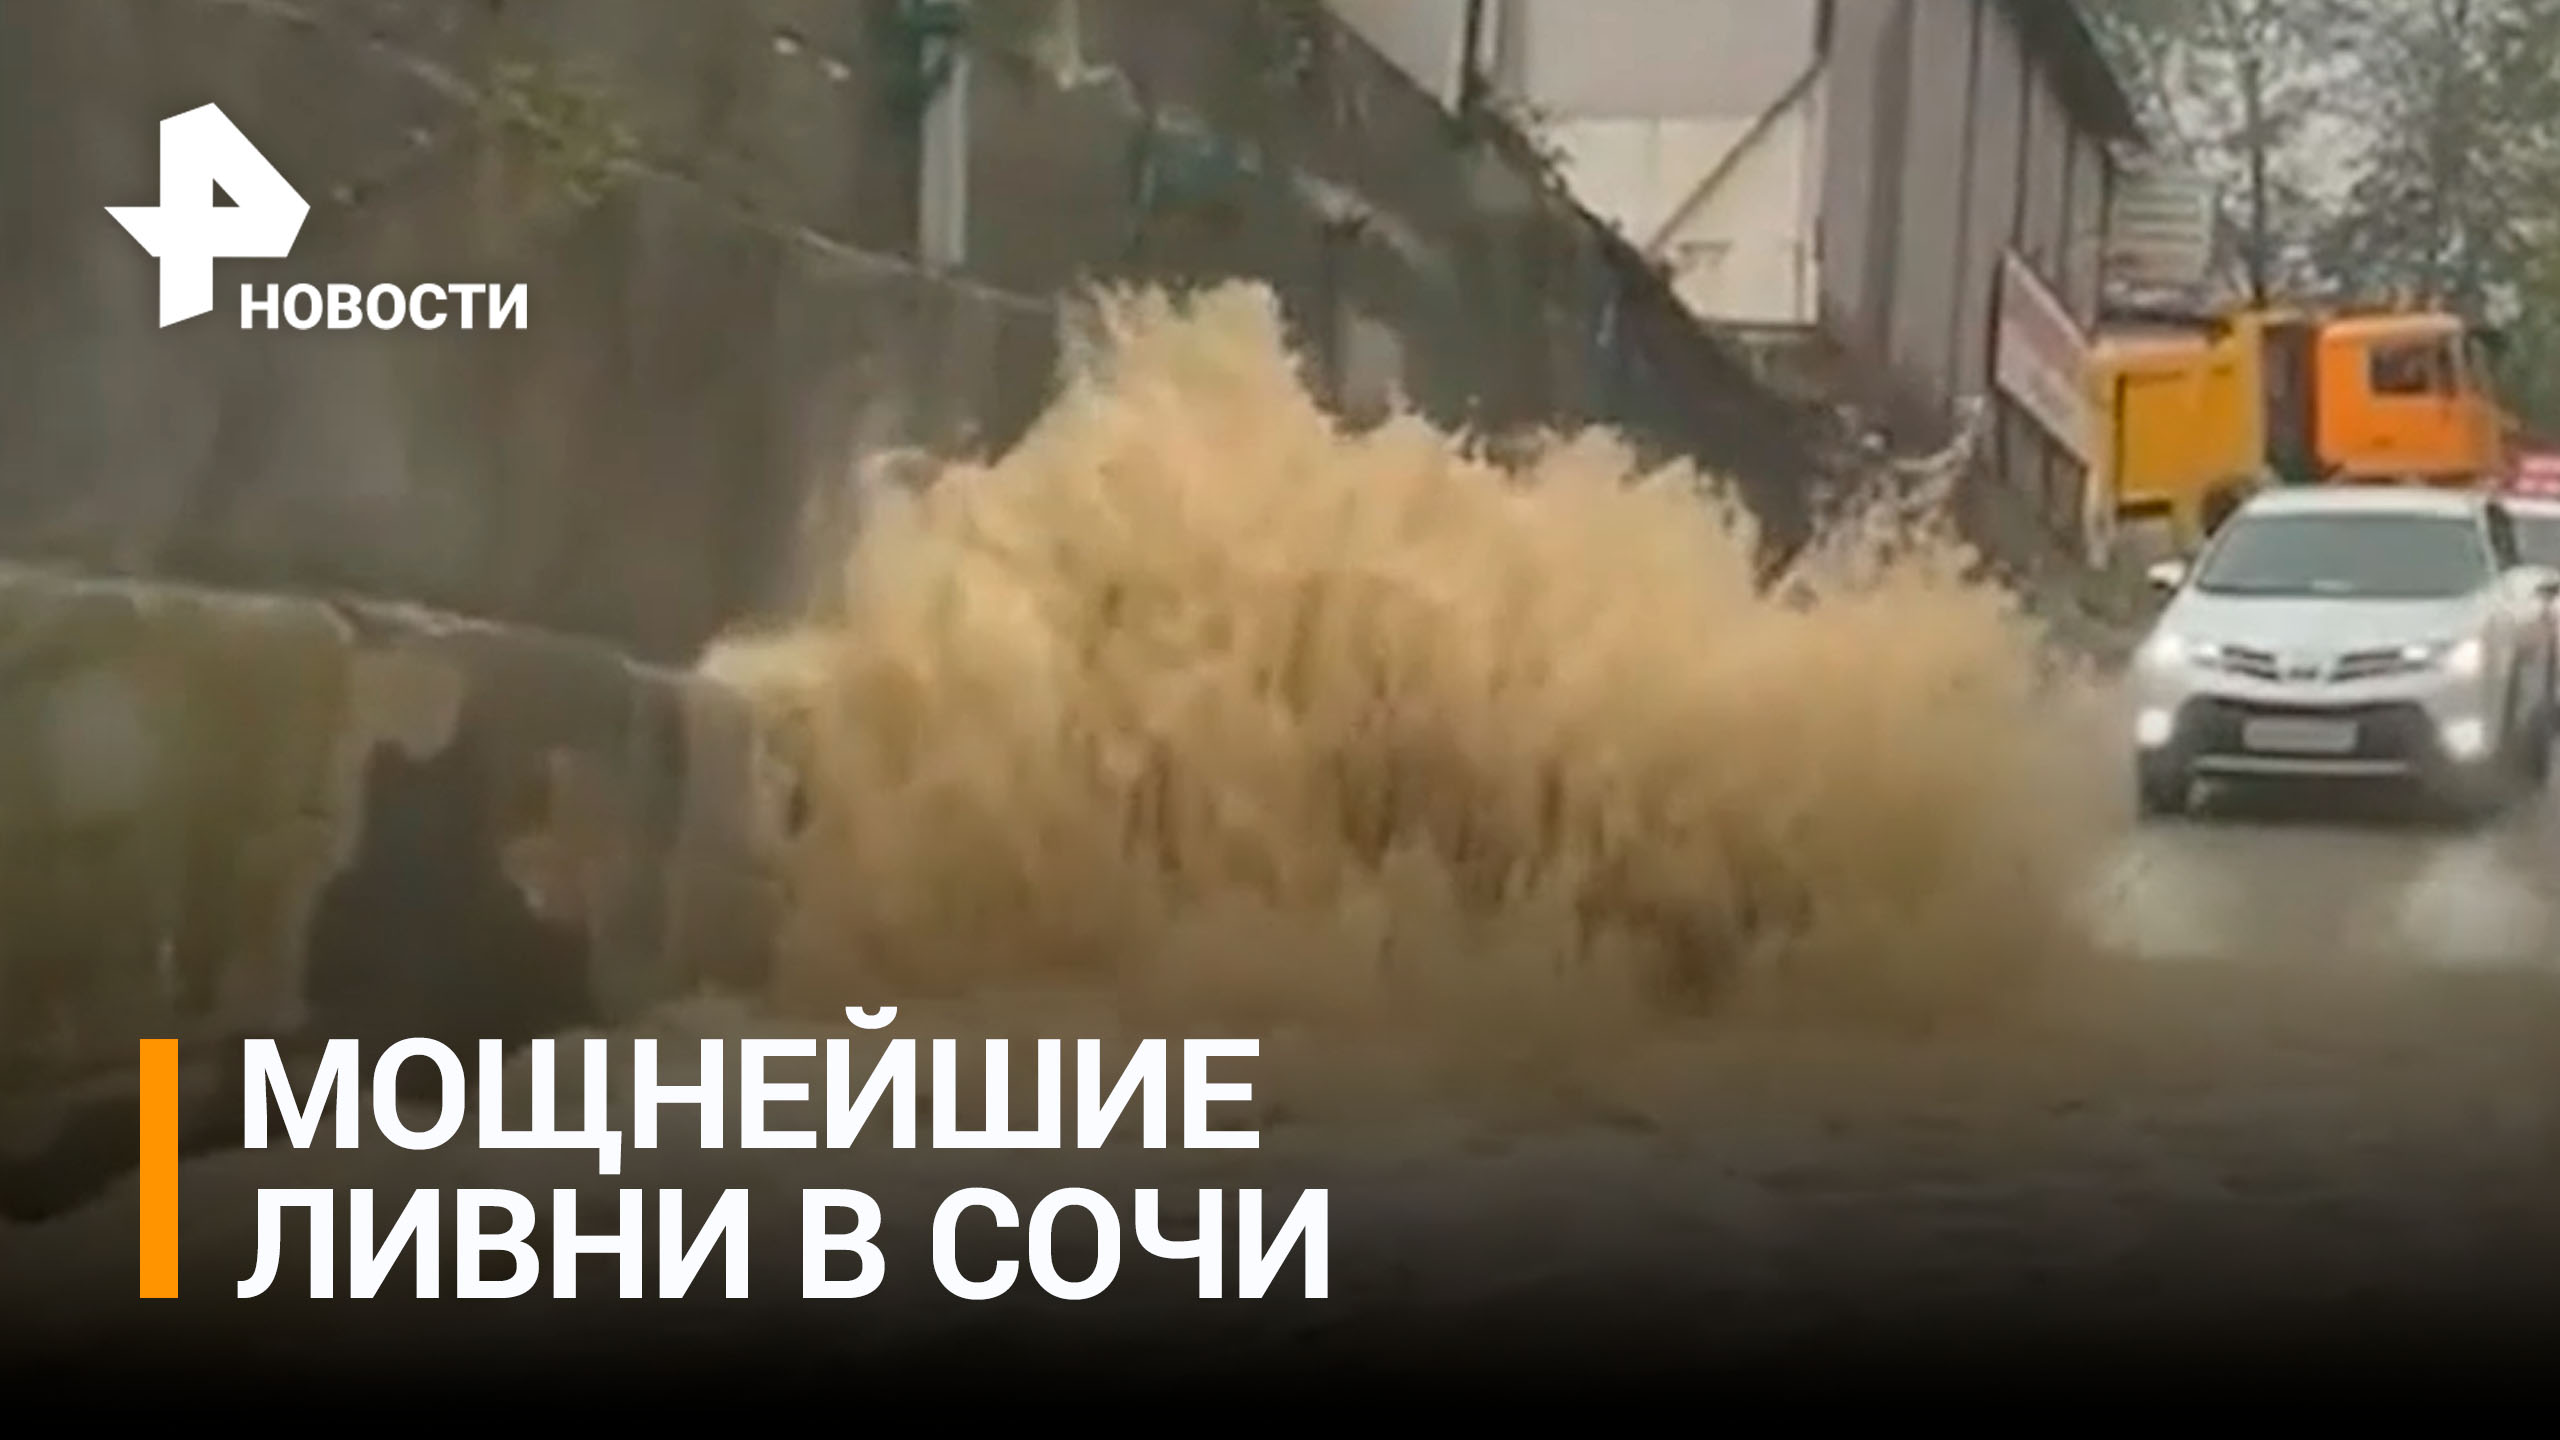 В Сочи ливнями затопило несколько улиц: город справляется с мощными ливнями / РЕН Новости